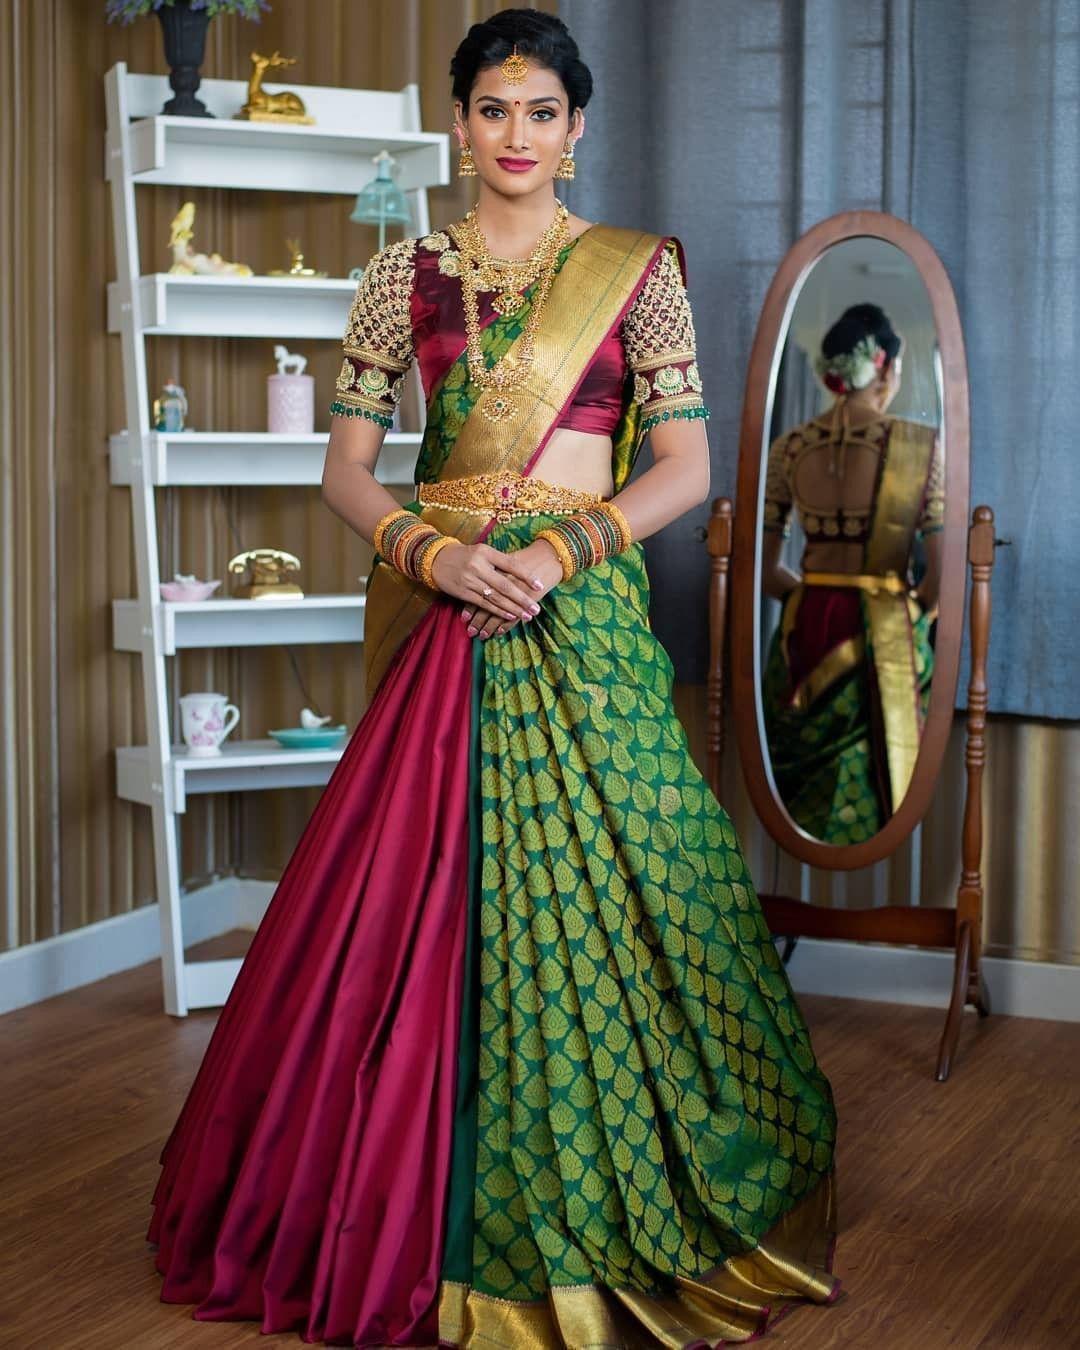 Details more than 158 lehenga saree wearing style